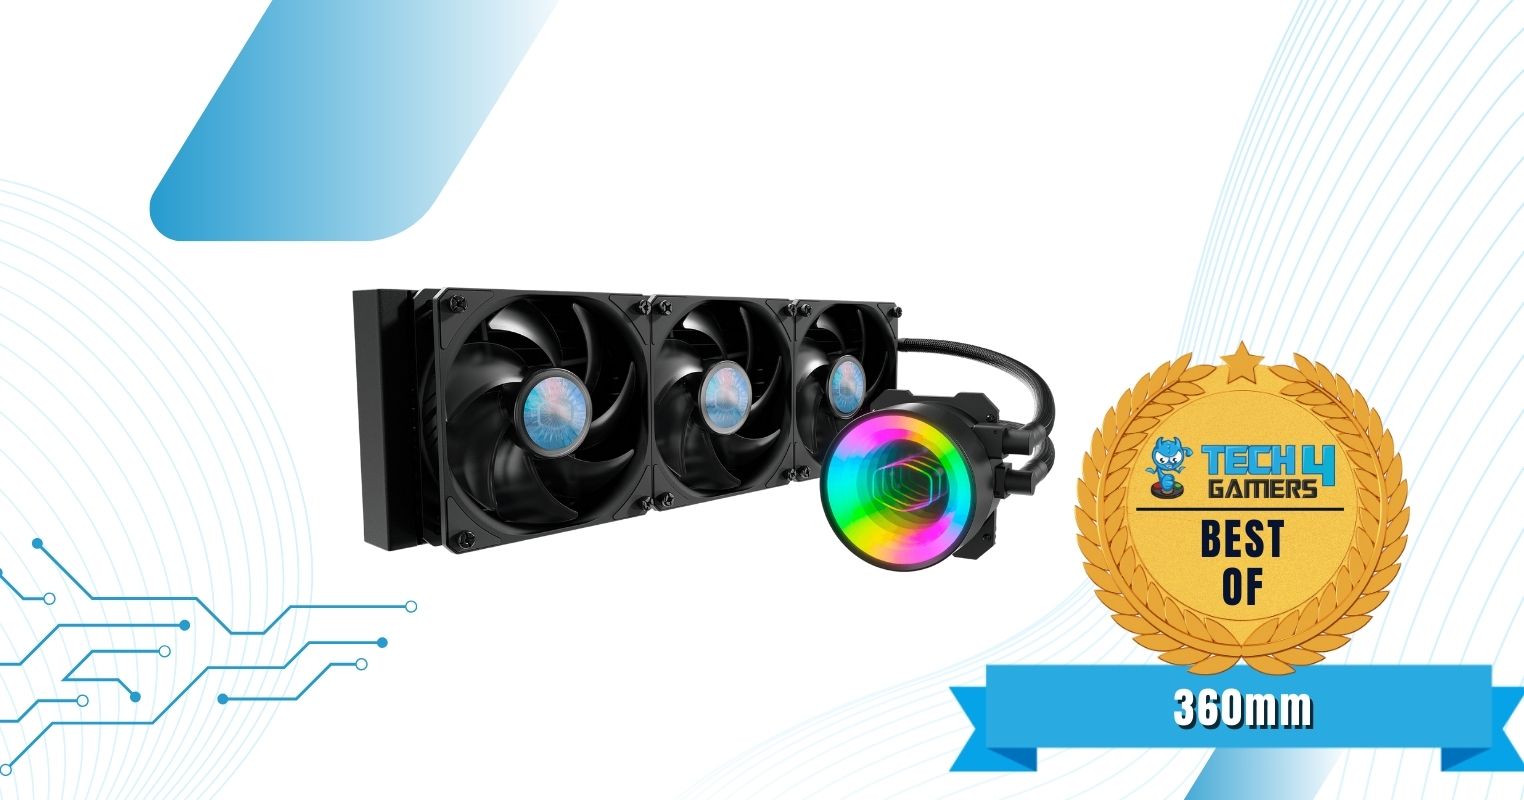 Best 360mm AIO Cooler For Ryzen 5 7600X - Cooler Master MasterLiquid ML360 Mirror A-RGB